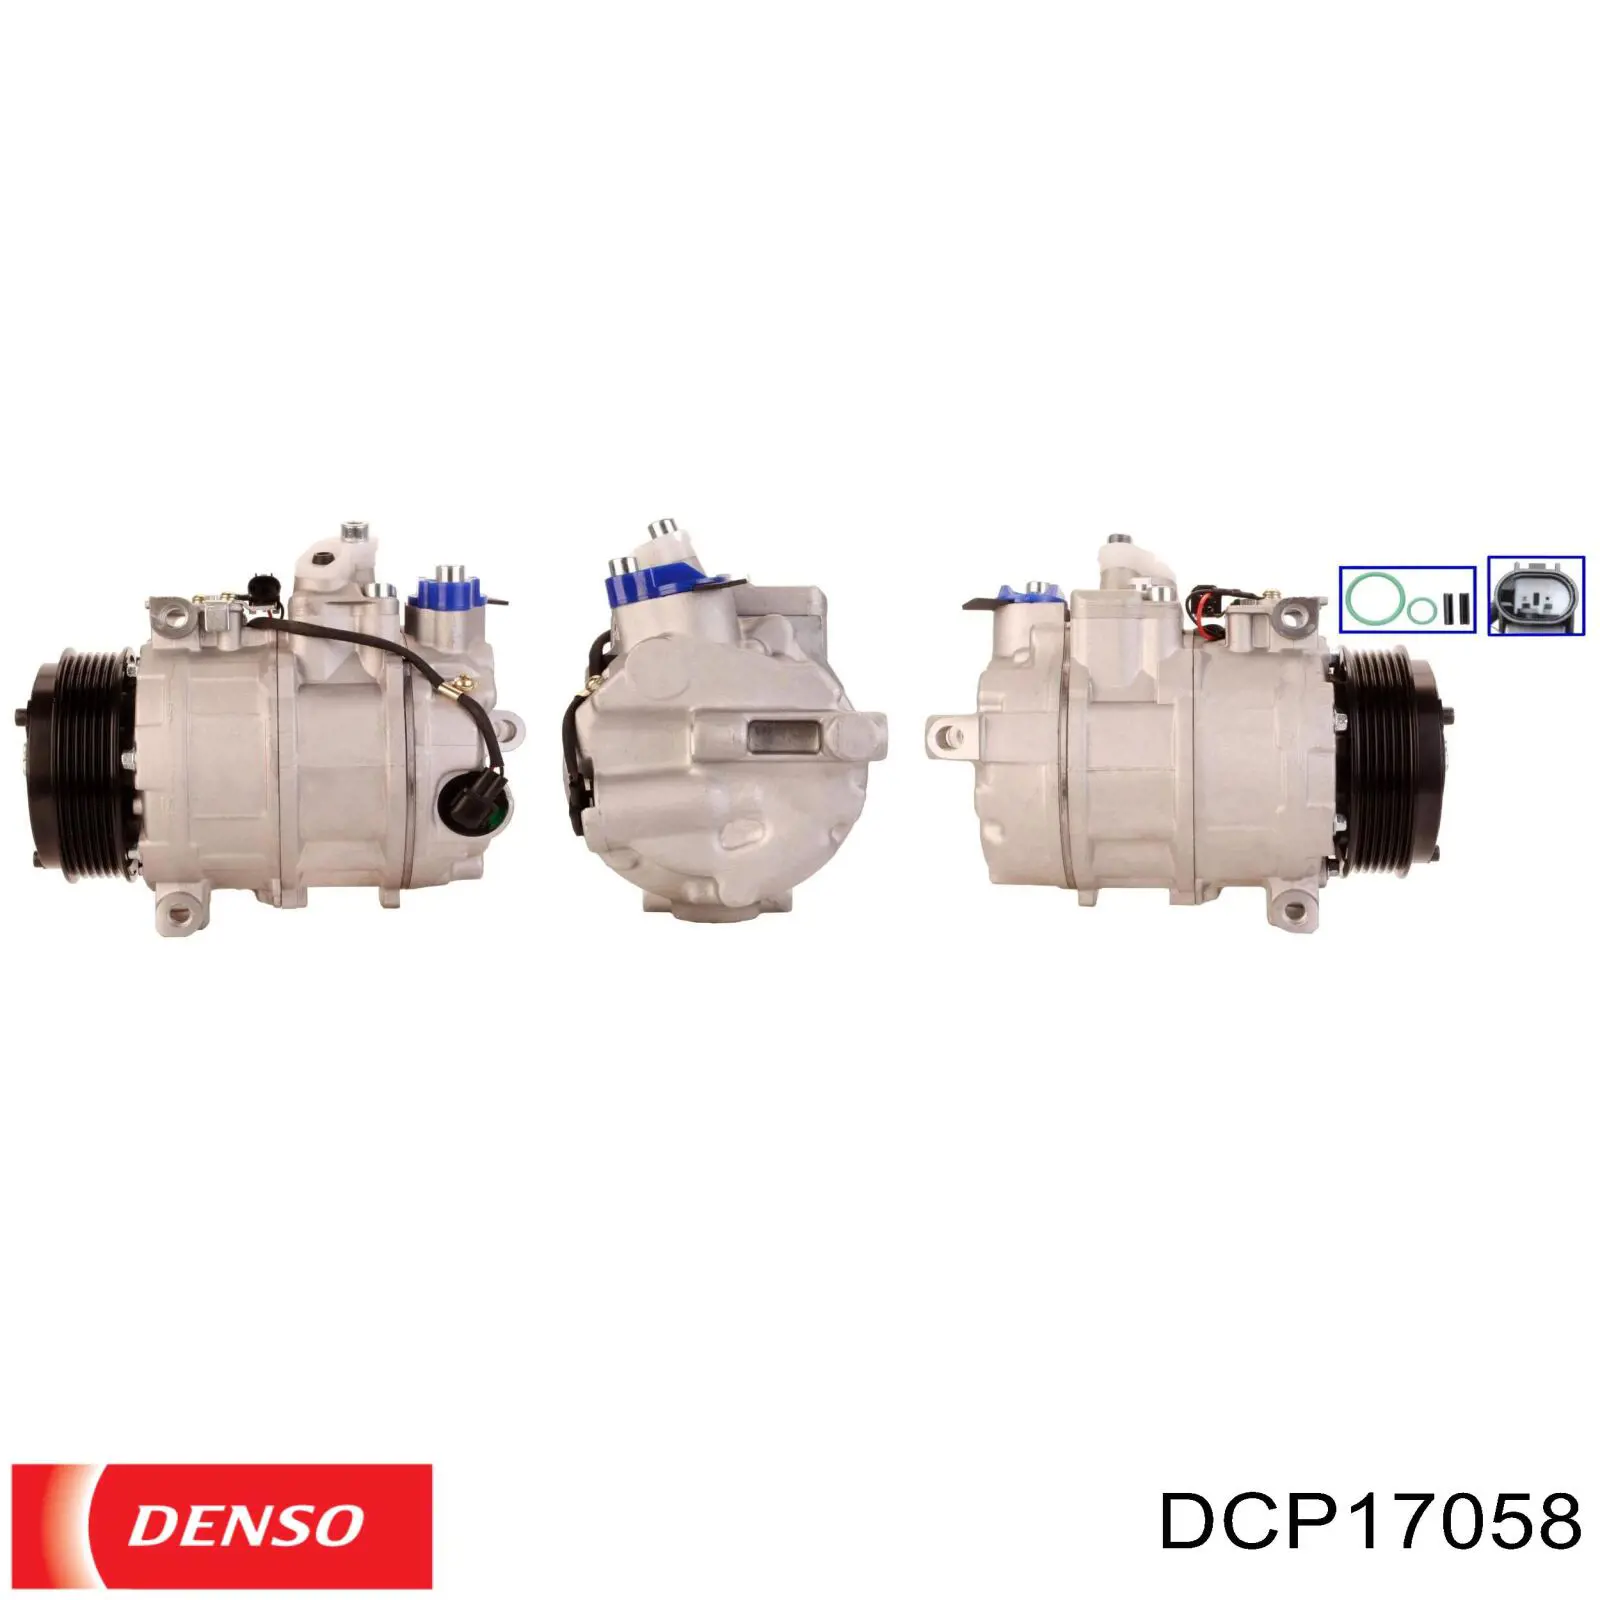 DCP17058 Denso compresor de aire acondicionado